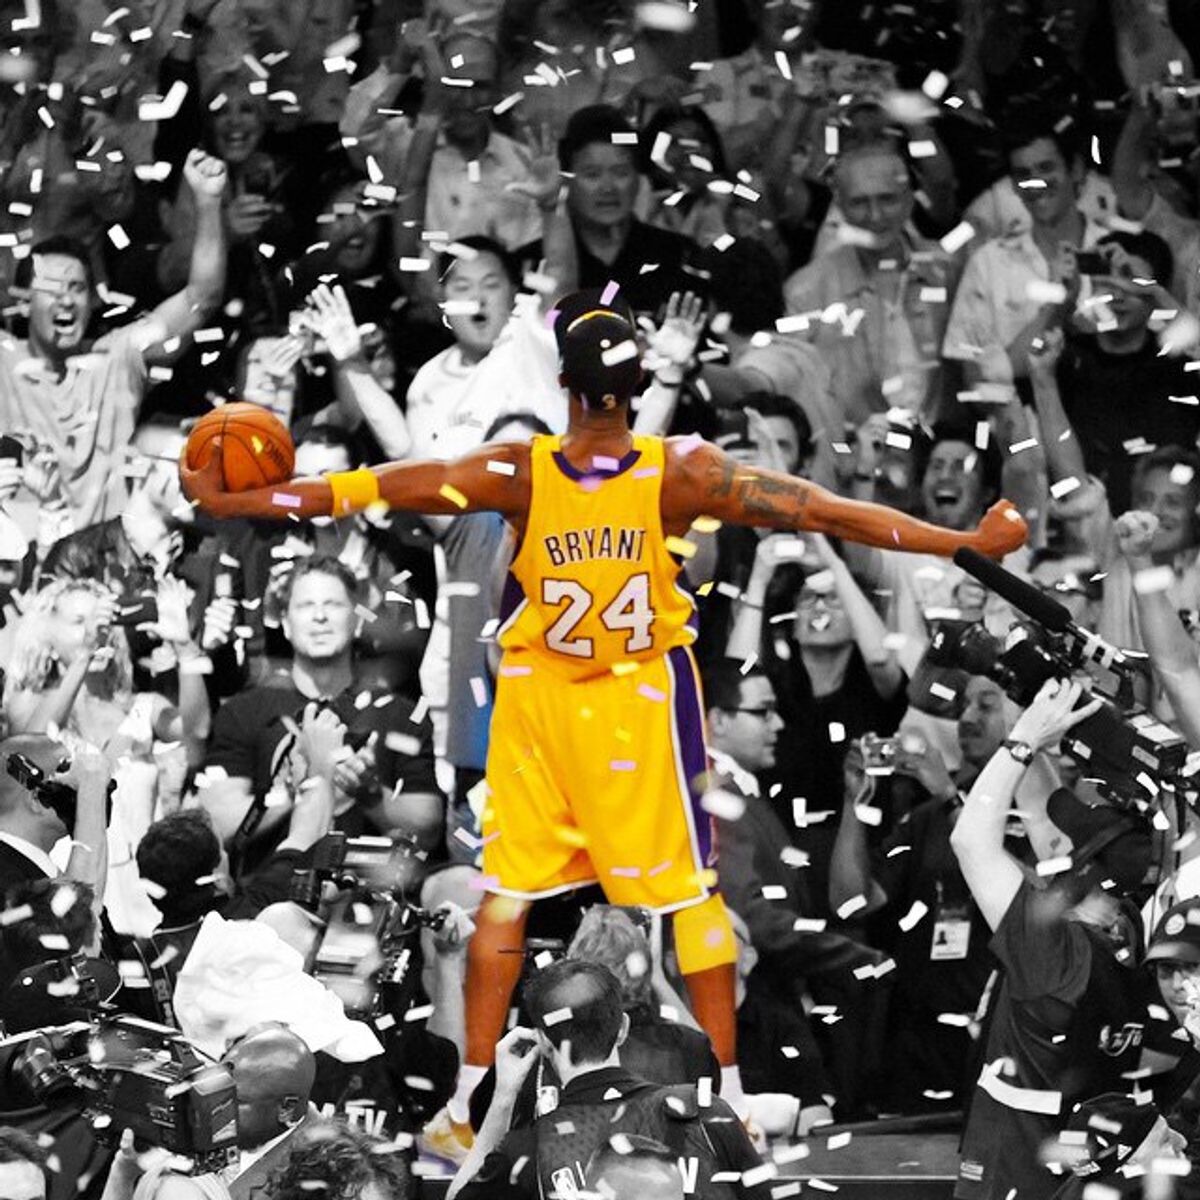 Honoring Kobe Bryant